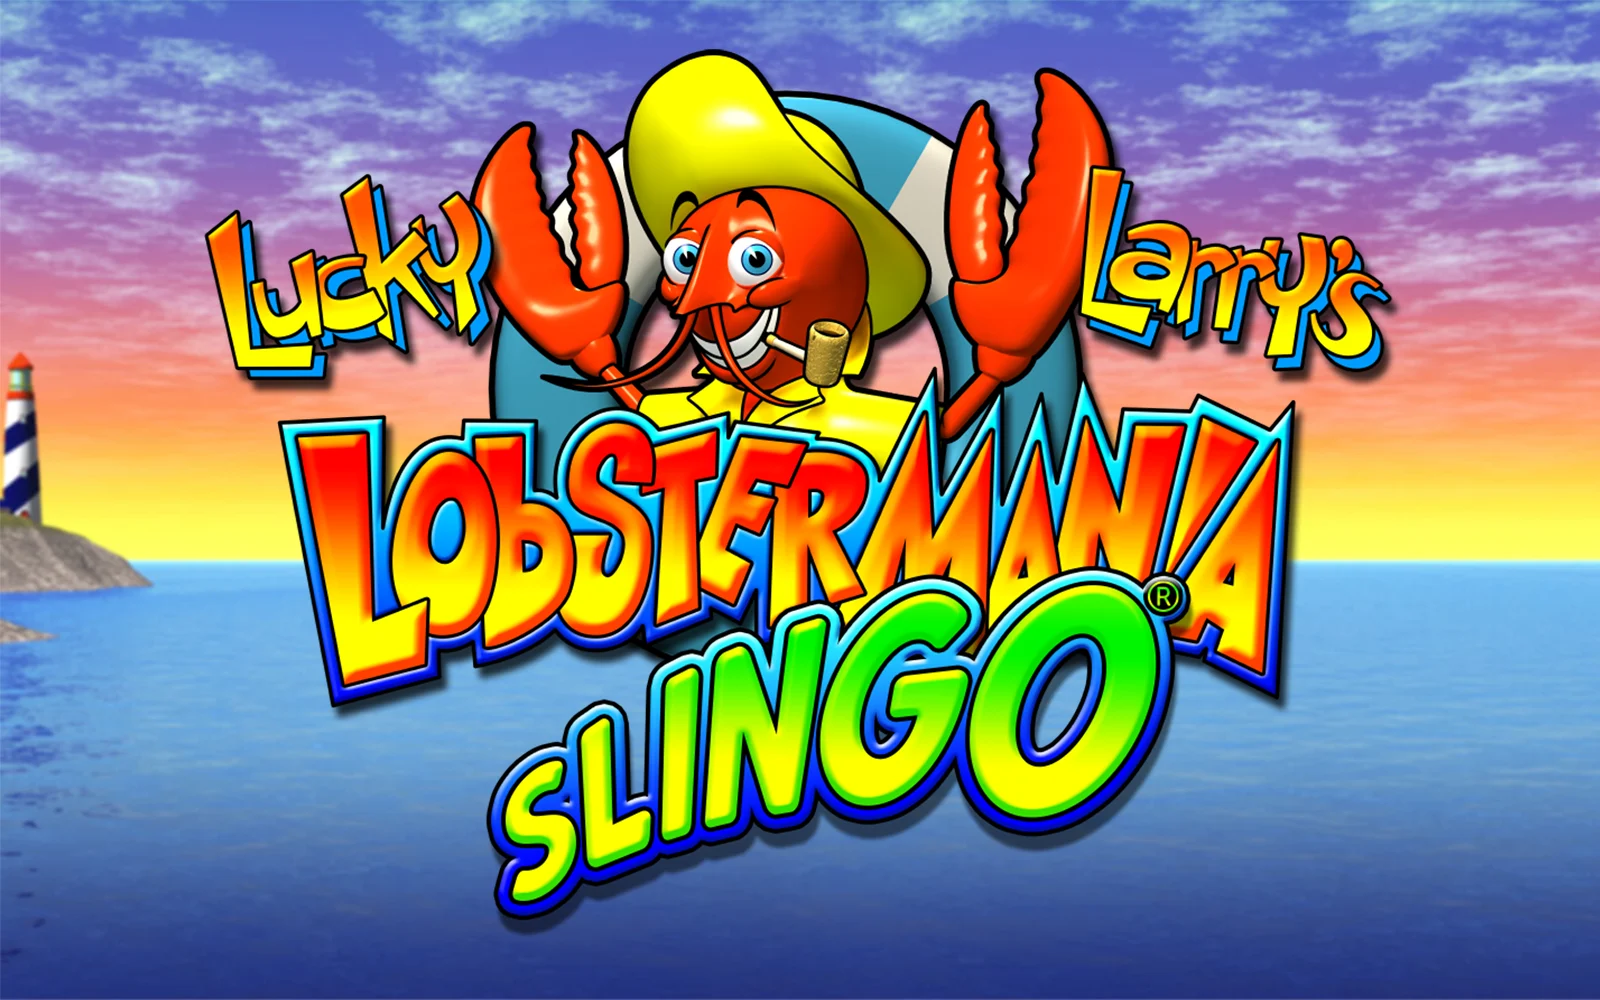 Παίξτε Lucky Larry's Lobstermania Slingo στο online καζίνο Starcasino.be